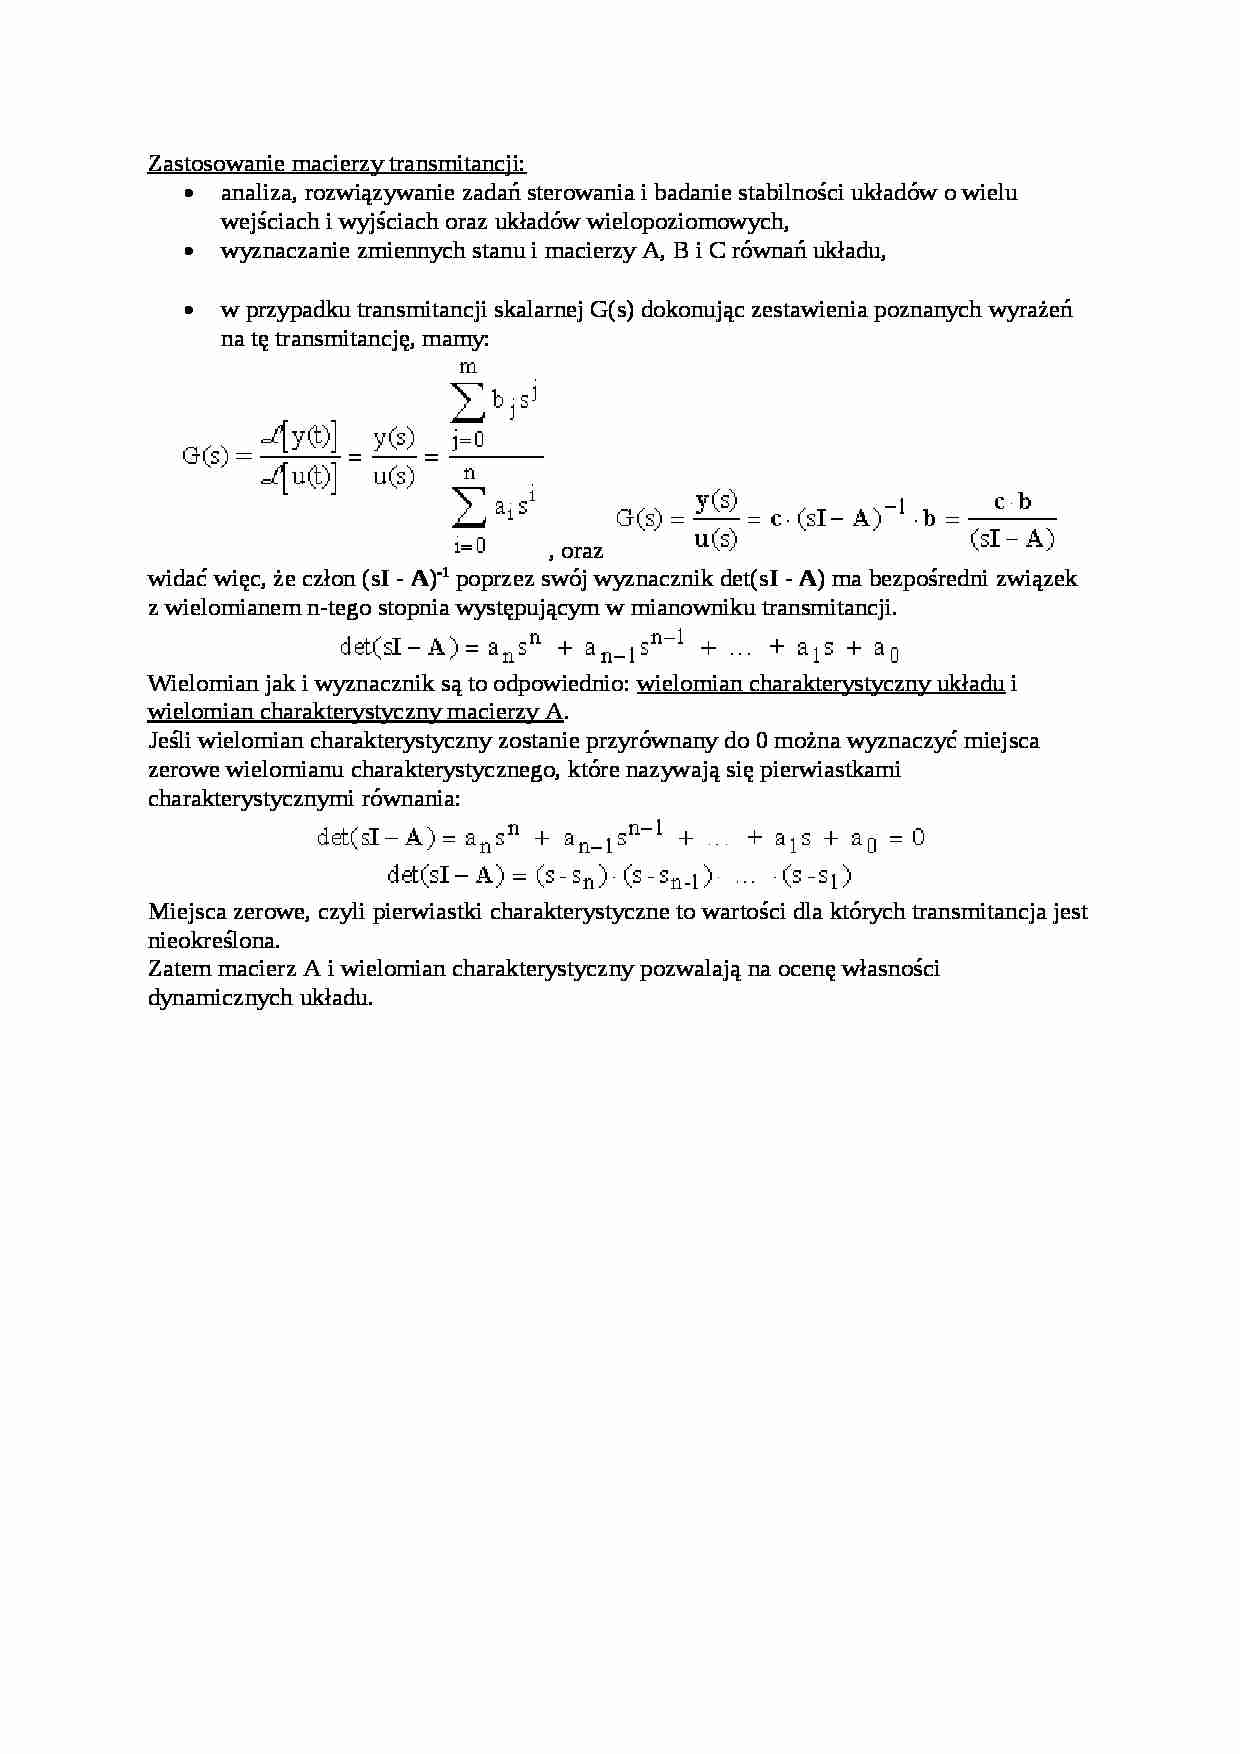 Zastosowanie macierzy transmitancji - wykład - strona 1